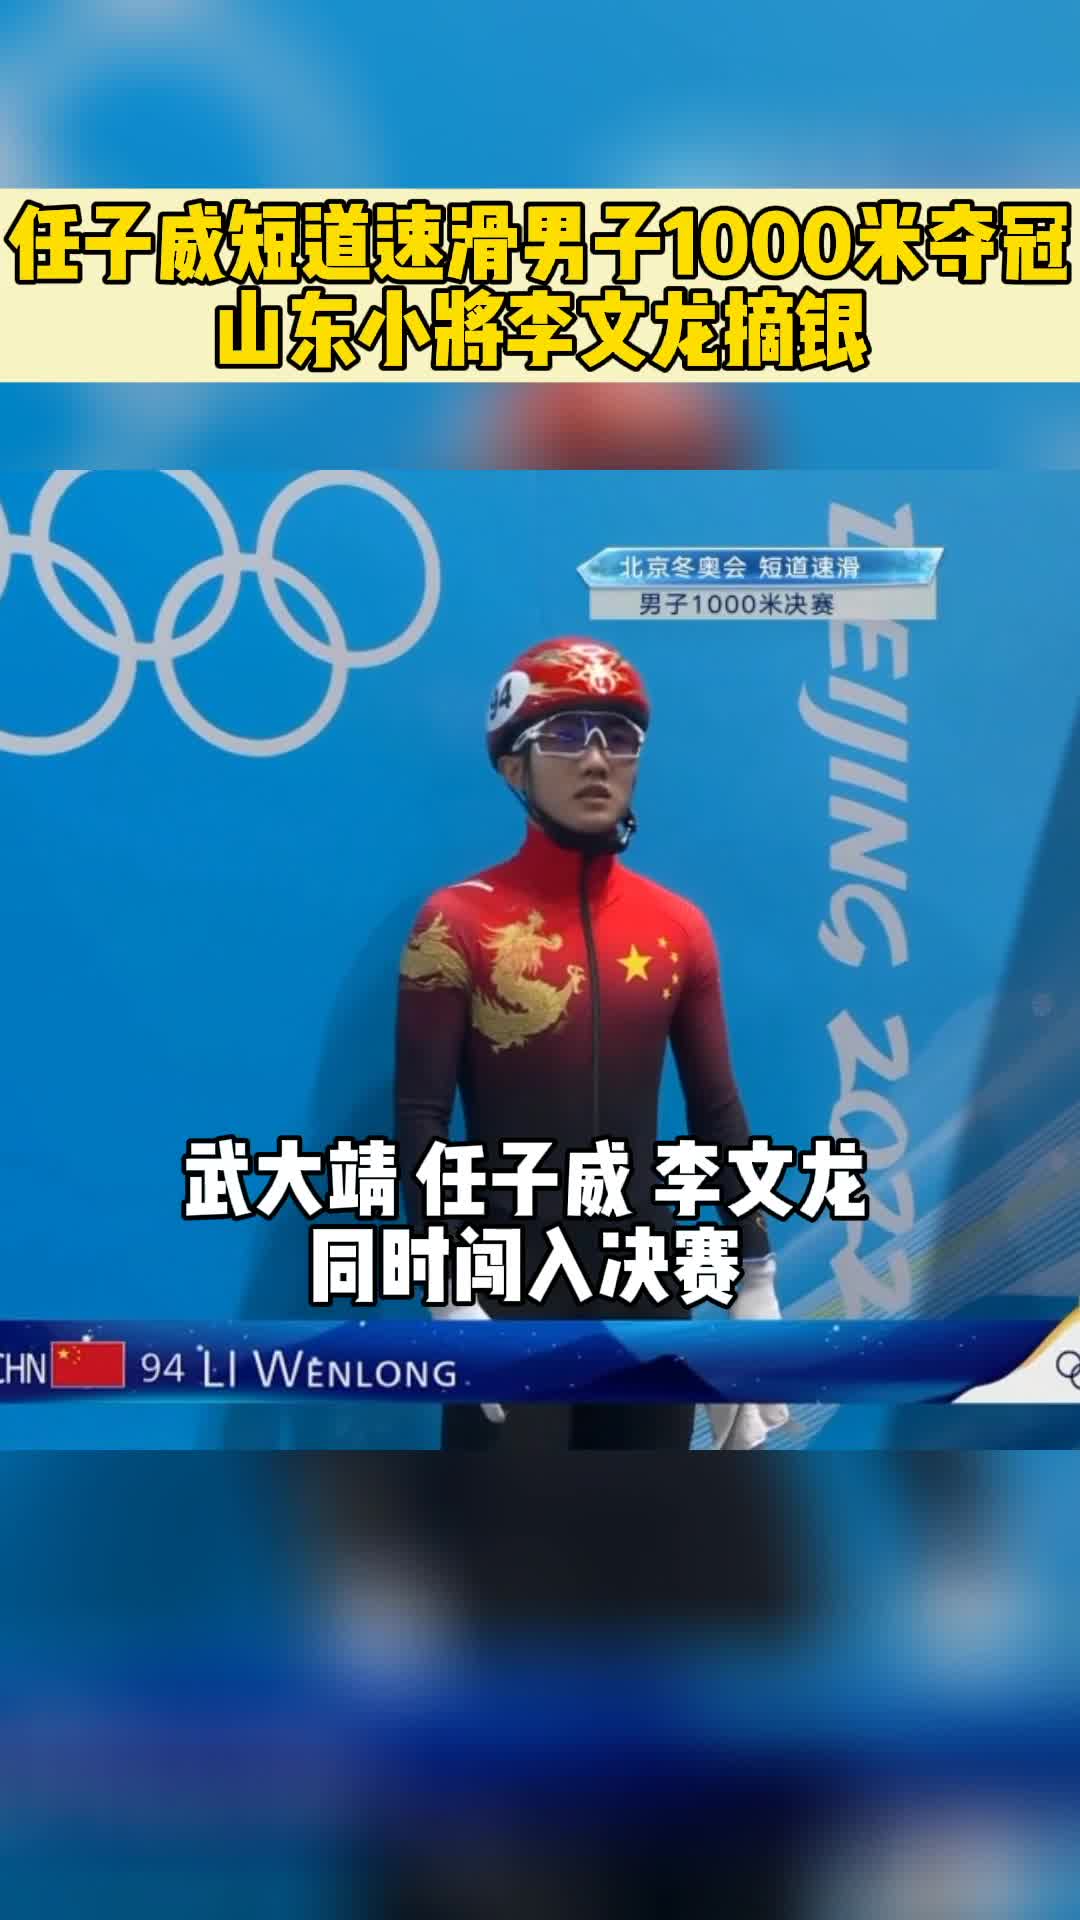 视频直击丨任子威夺短道速滑男子1000米金牌 山东小将李文龙摘银